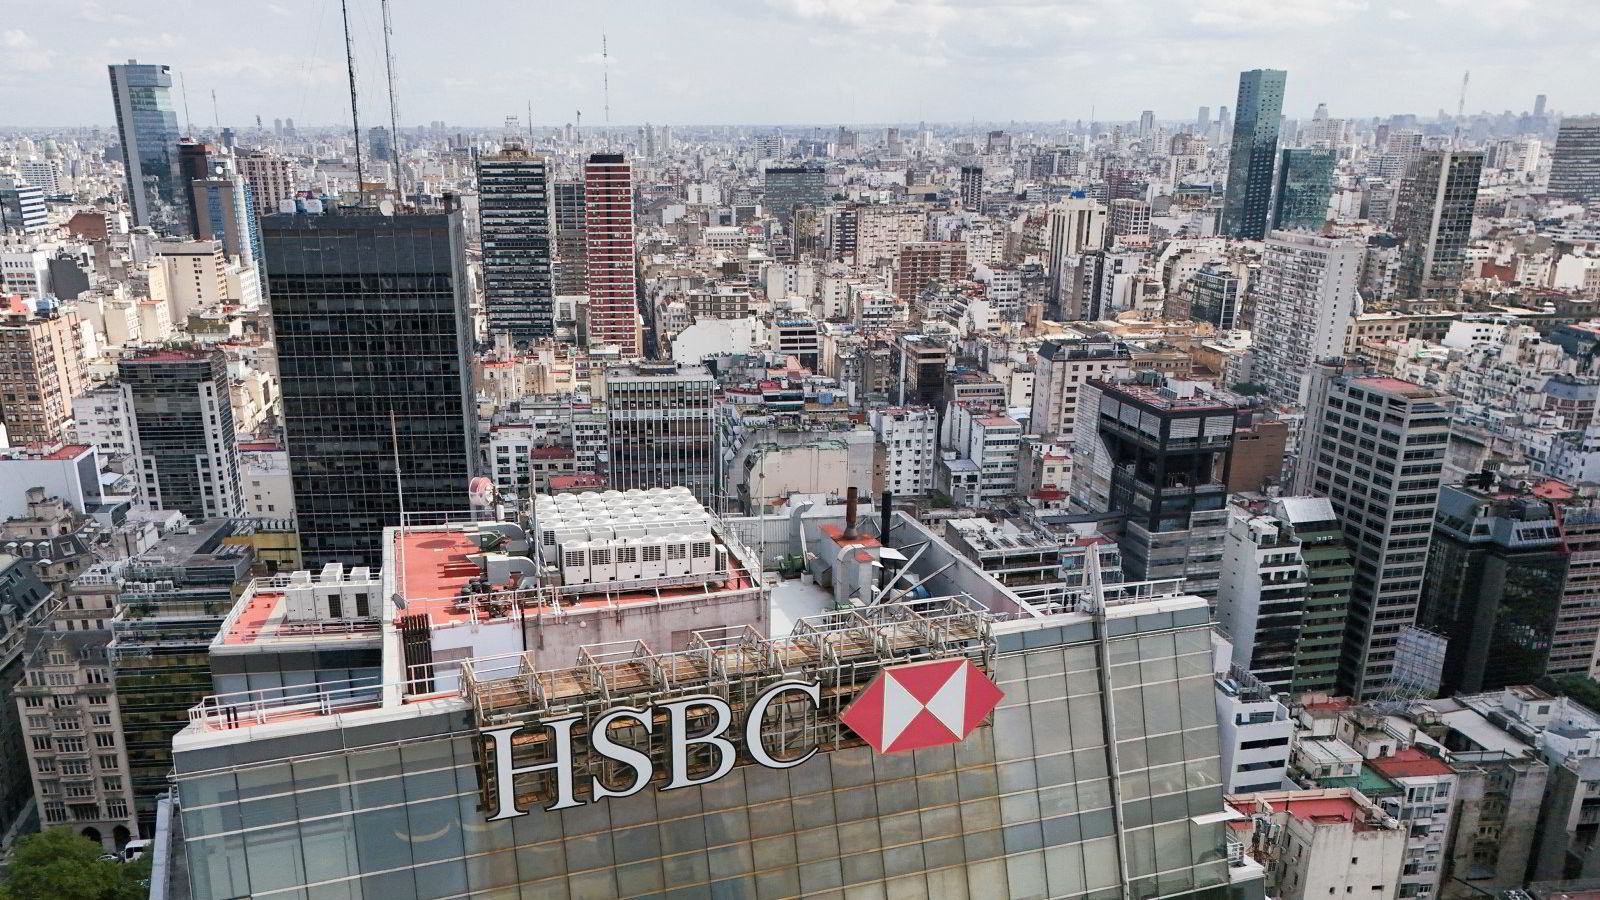 Storbank kutter globale ambisjoner – toppsjefen går av